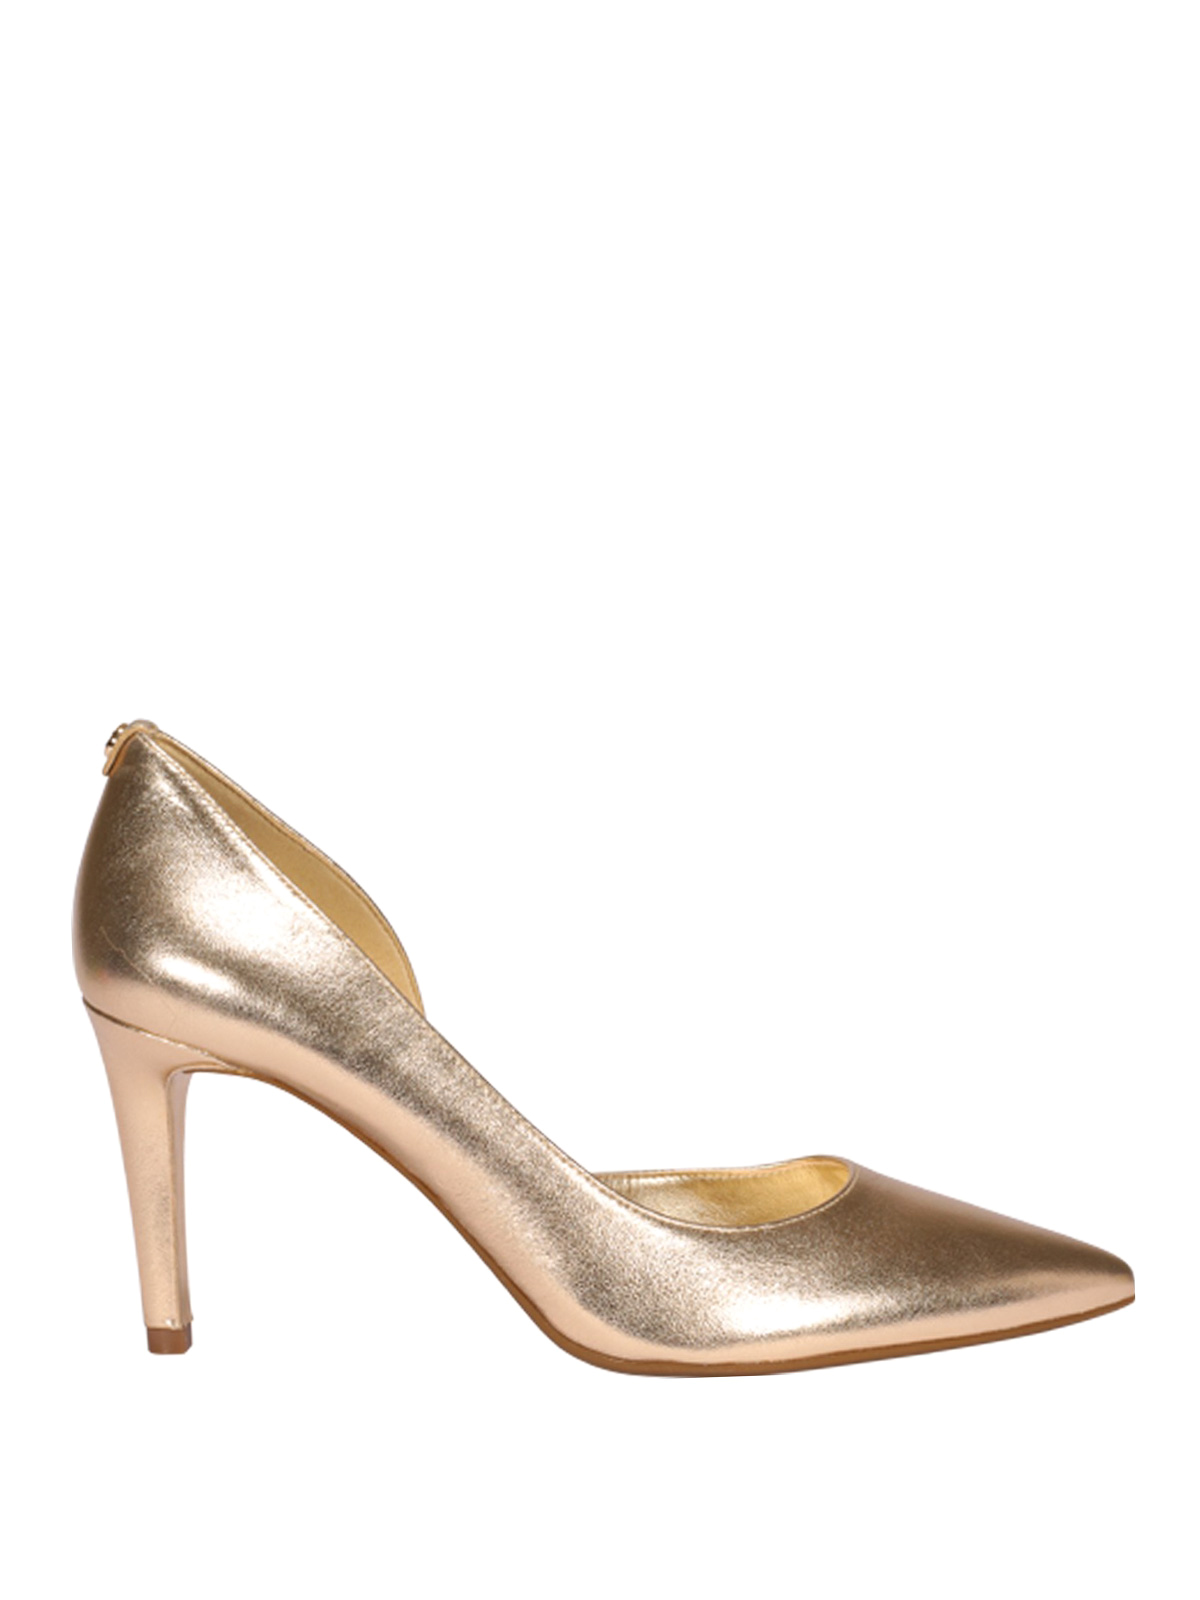 Court shoes Michael Kors - Dorothy Flex d'Orsay golden leather pumps -  40T9DOMP2M740